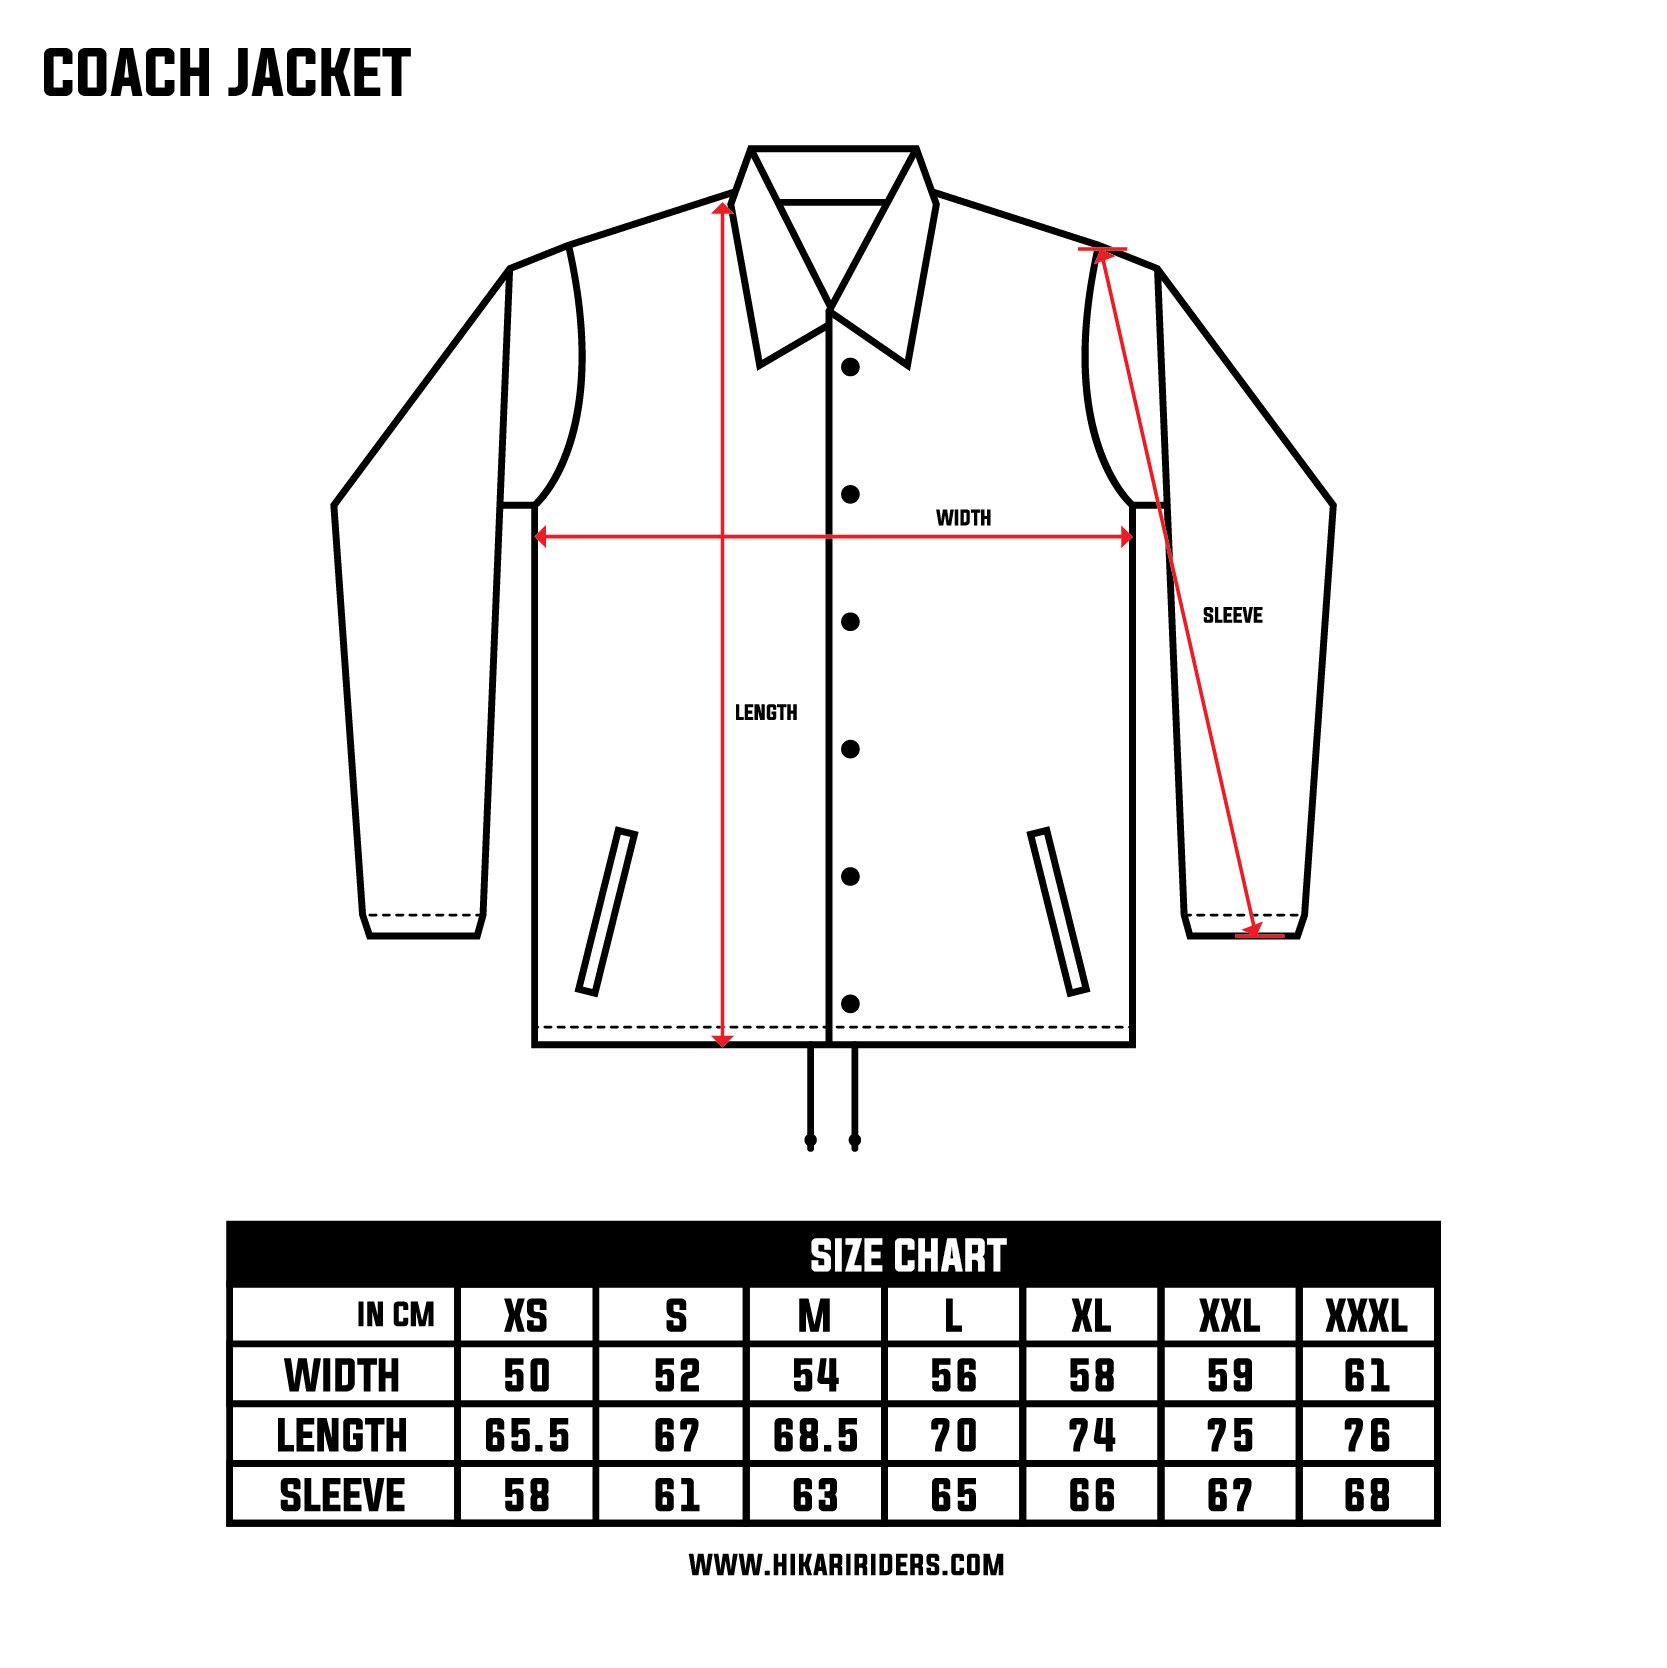 Coach Jacket.jpg